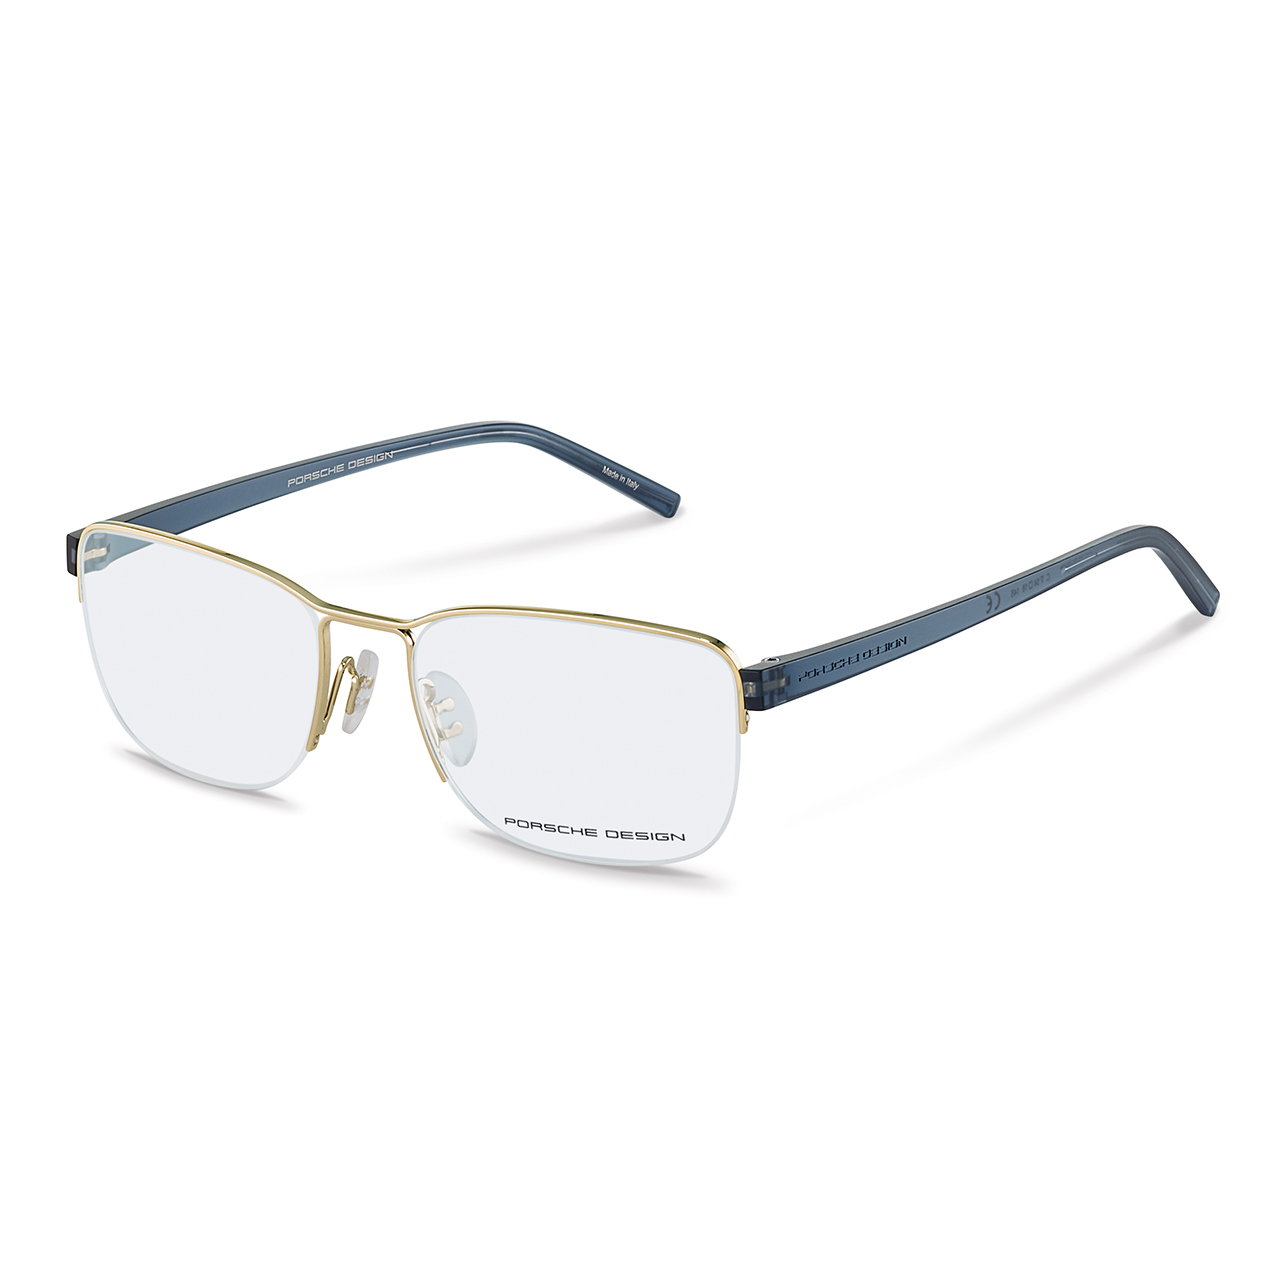 Korrektionsbrille P´8357 - Titanbrillen - Hochwertig & besonders leicht ...